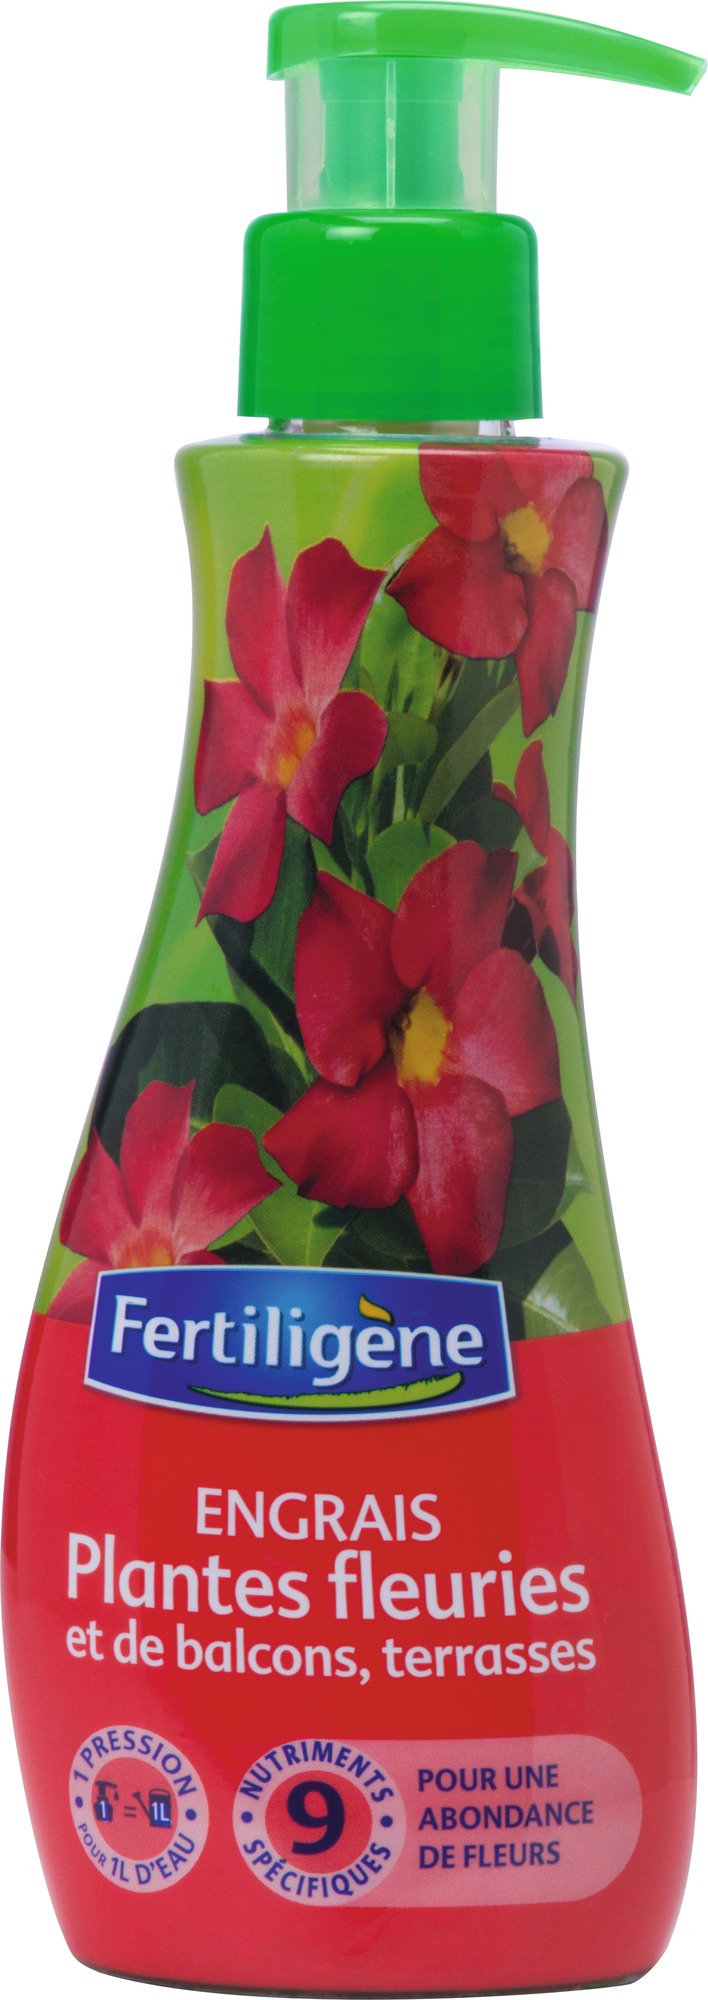 Engrais plantes fleuries et de balcons ou terrasses Fertiligène - 230 ml